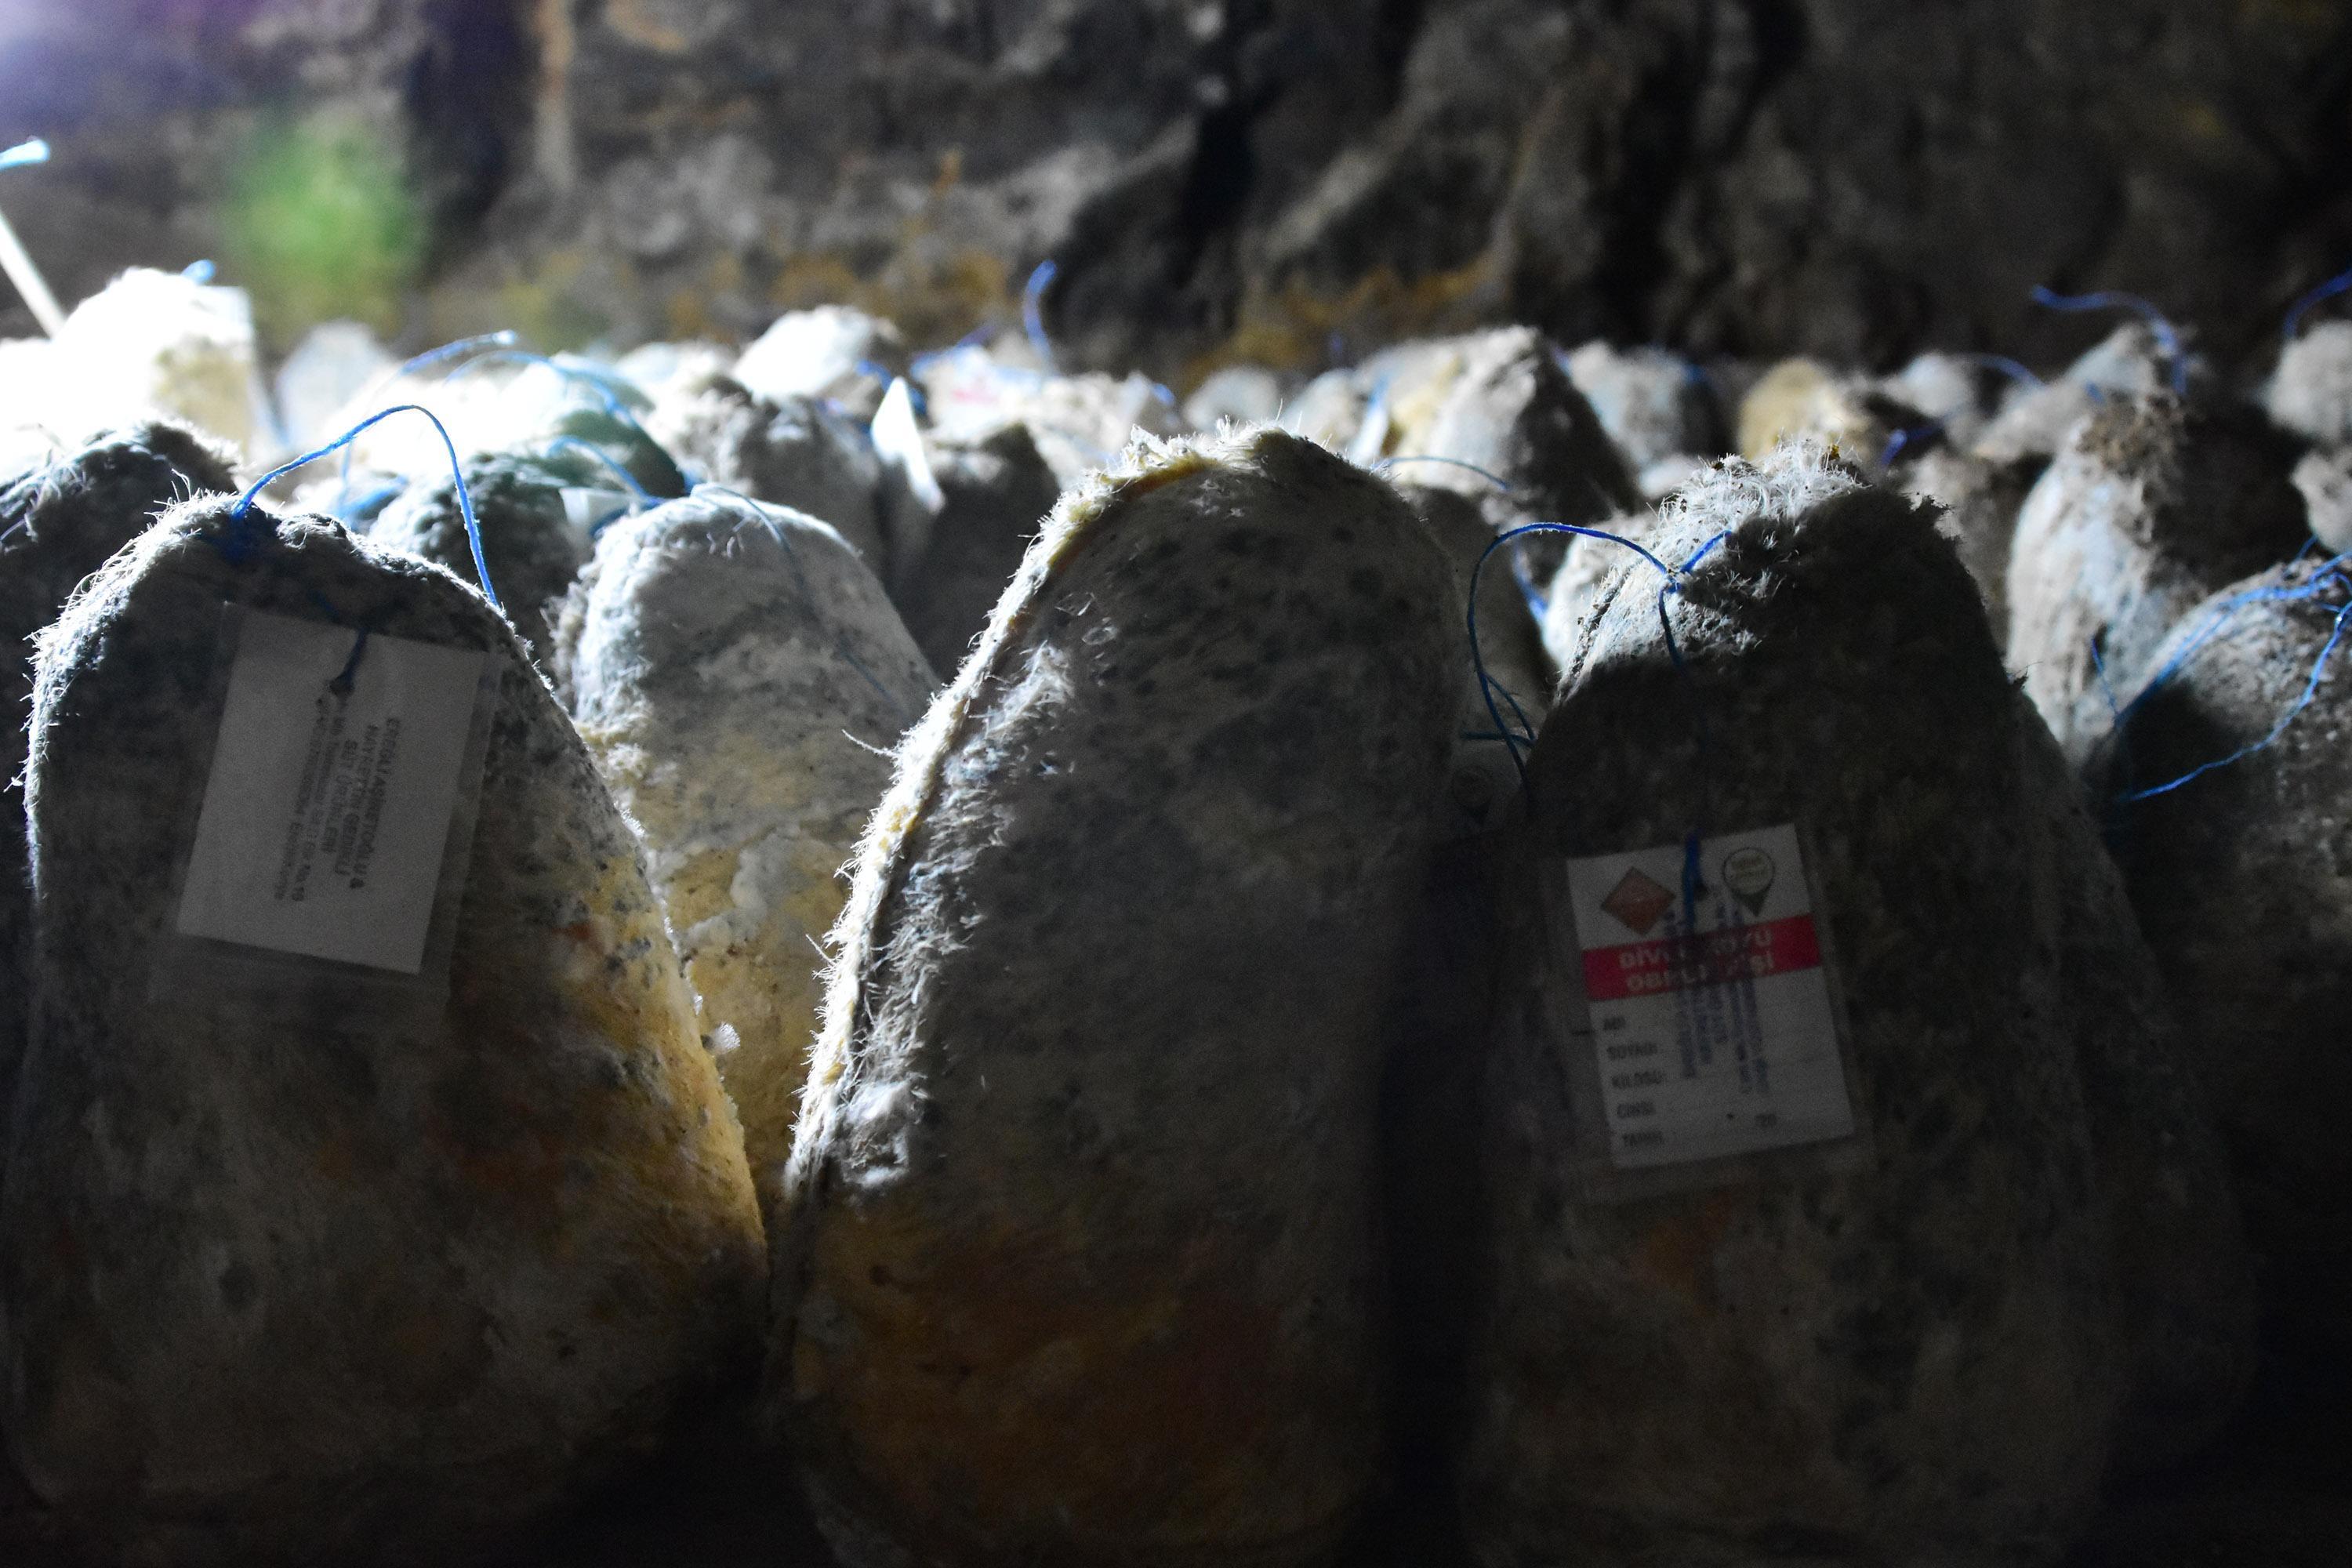 Divle obruk peyniri, 36 metre derinliğindeki mağarada olgunlaşmayı bekliyor